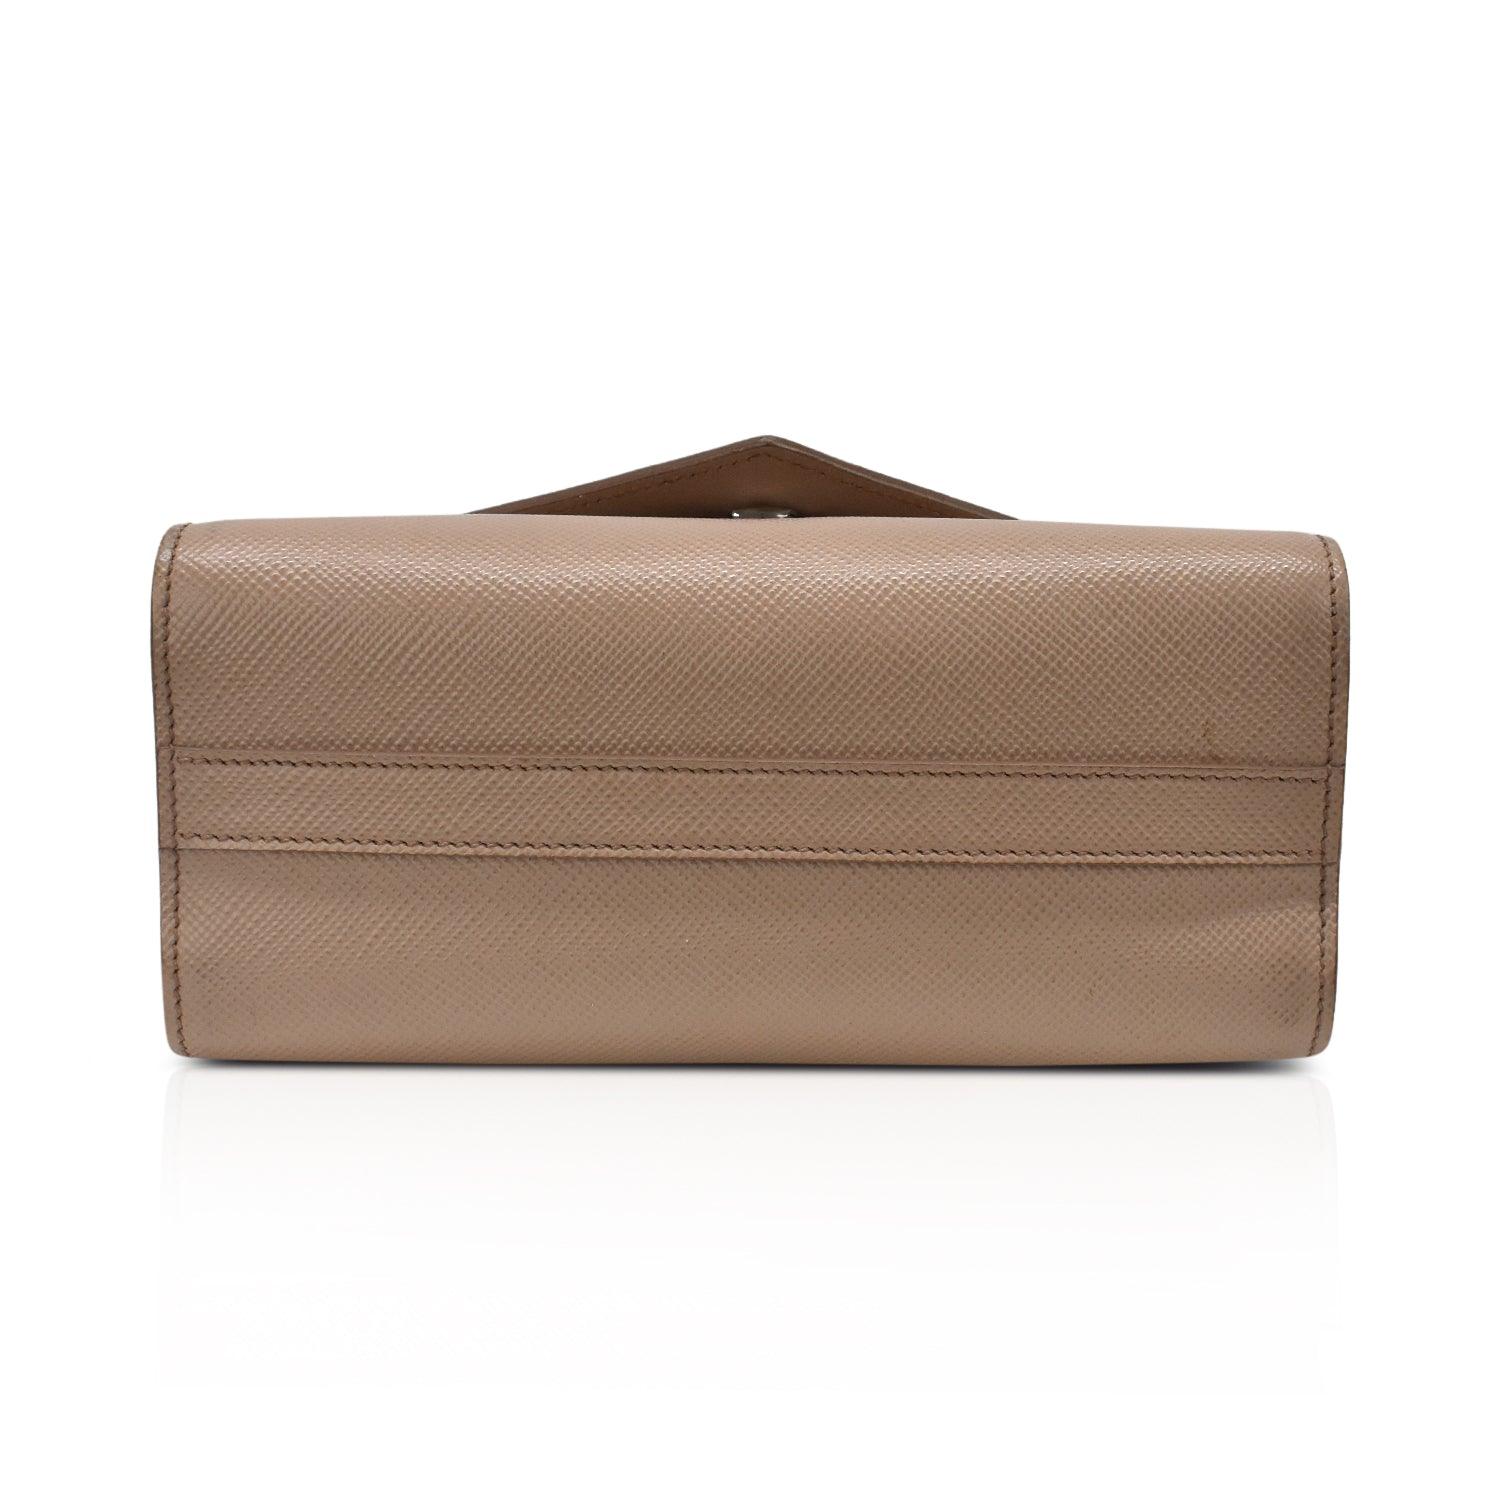 Prada 'Cuir Monochrome' Bag - Fashionably Yours